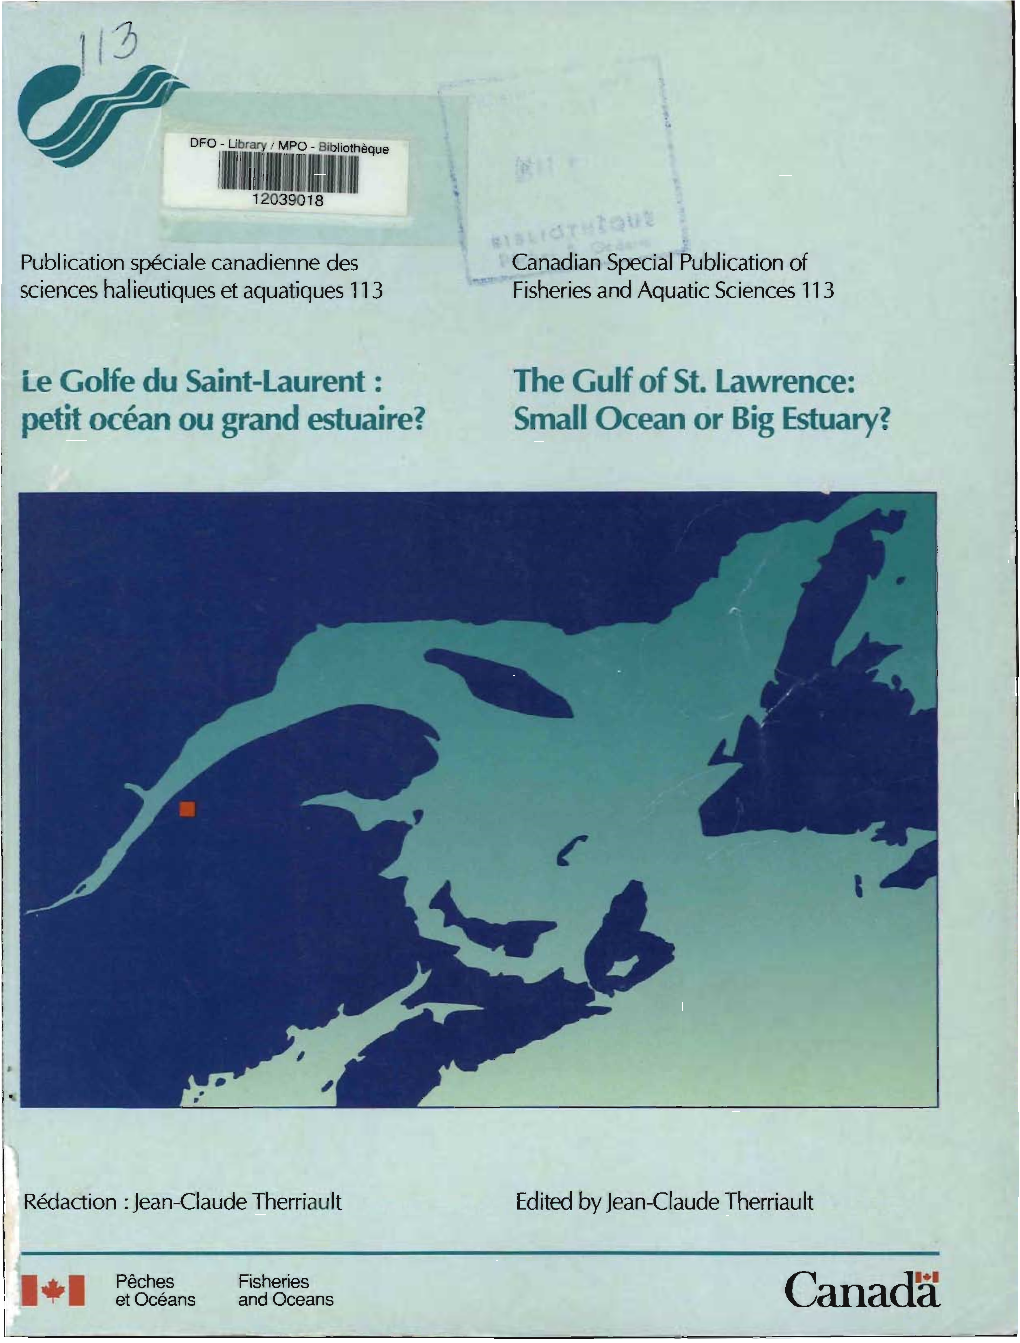 Le Golfe Du Saint-Laurent: the Gulf of St